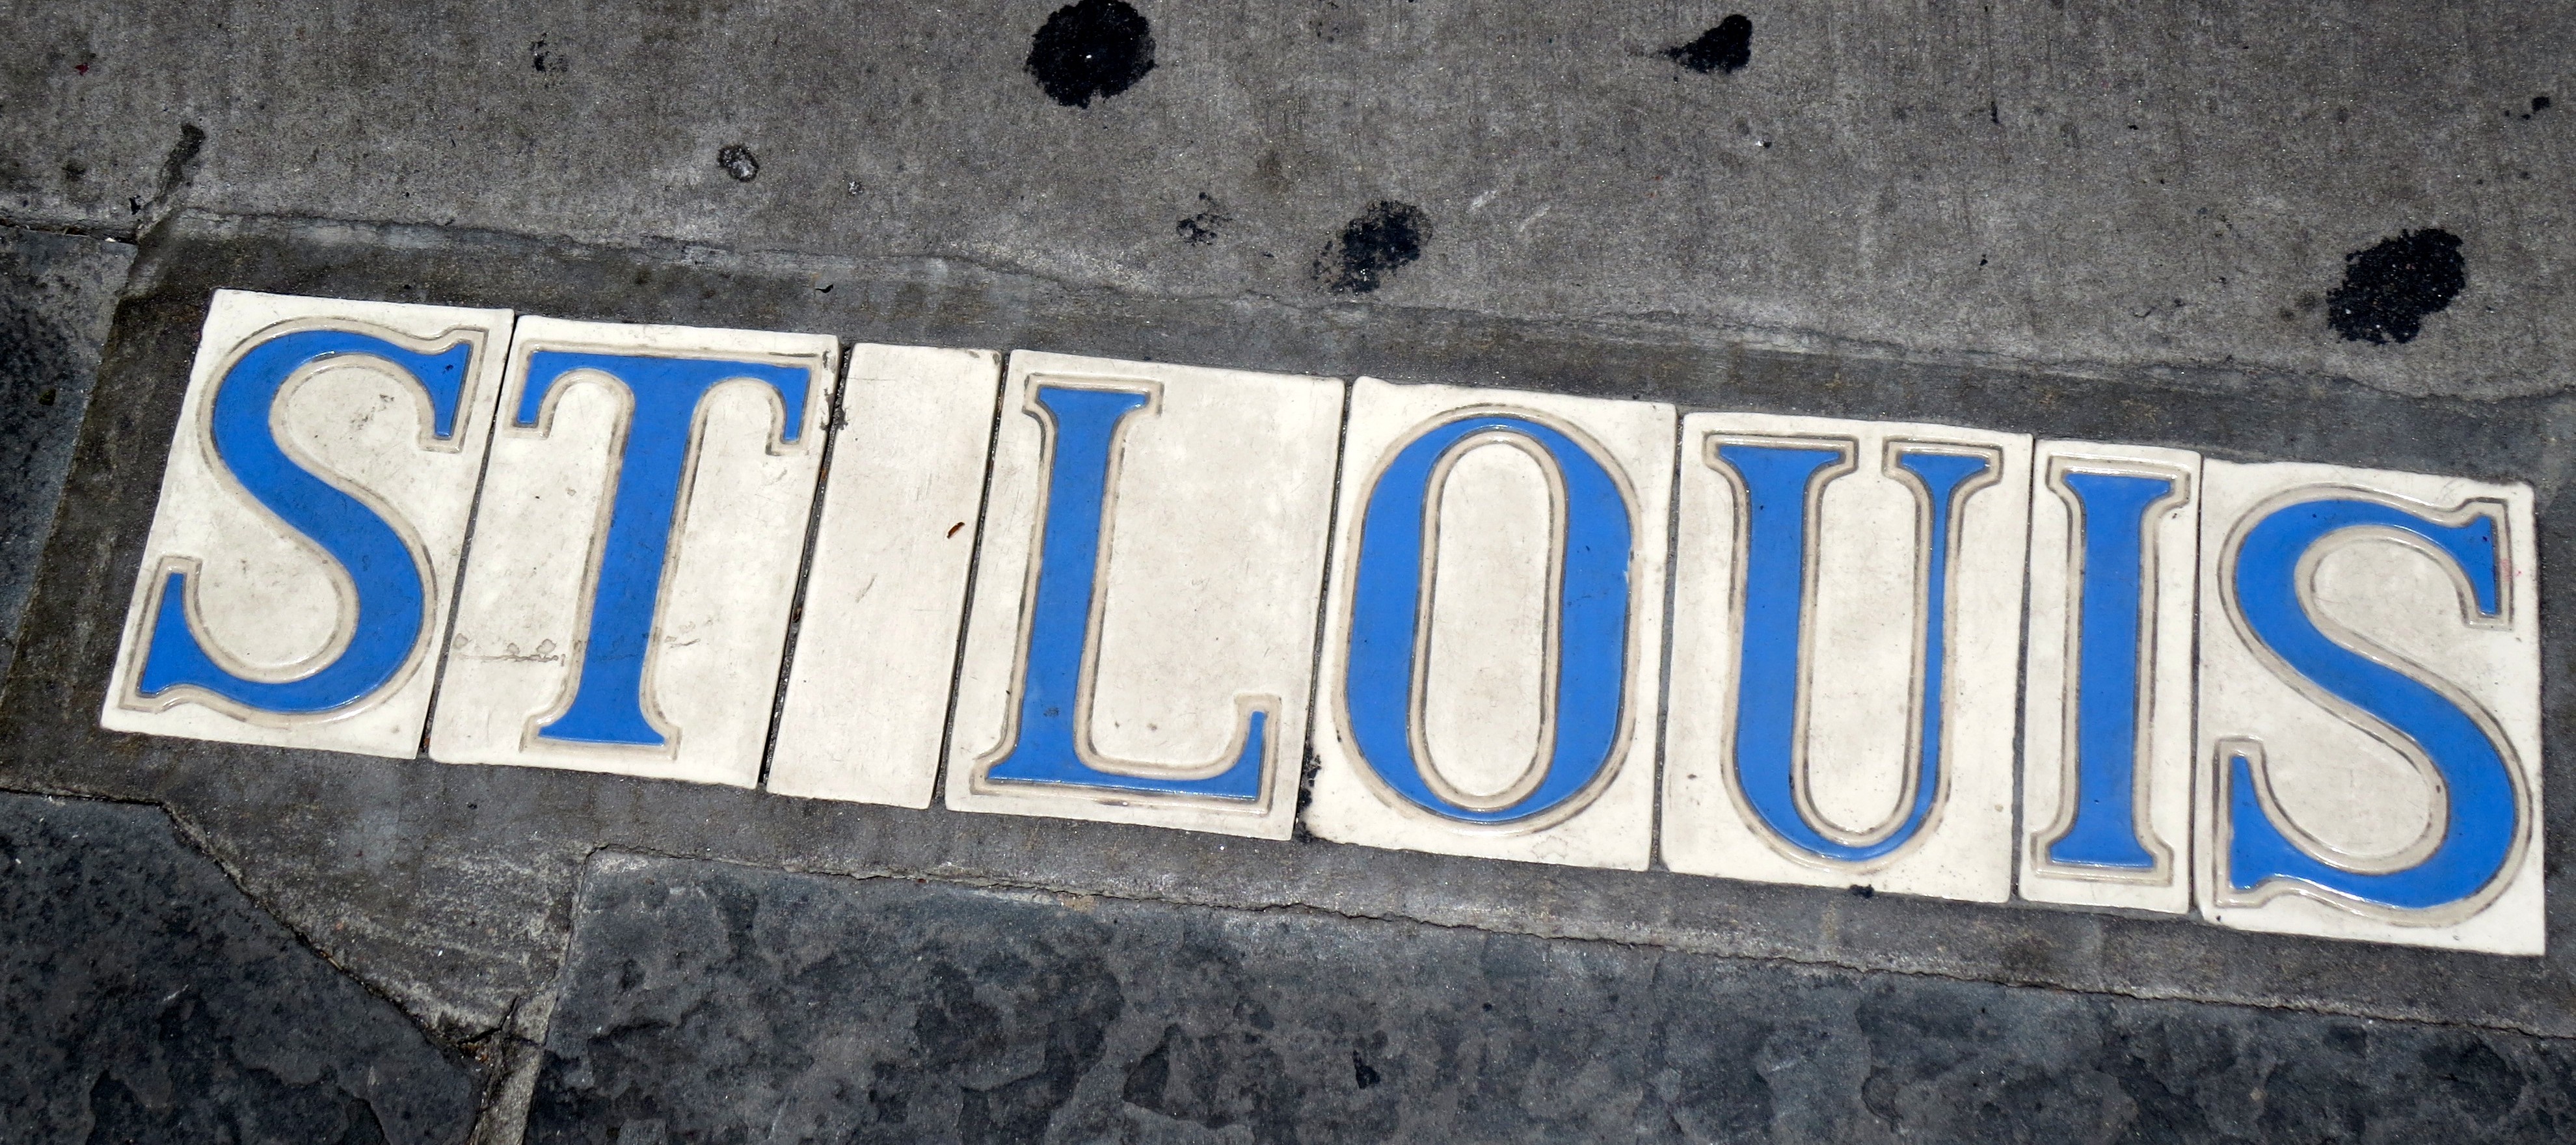 white street tiles with blue lettering spelling St. Louisrivate St. Louis neighborhoods street tiles